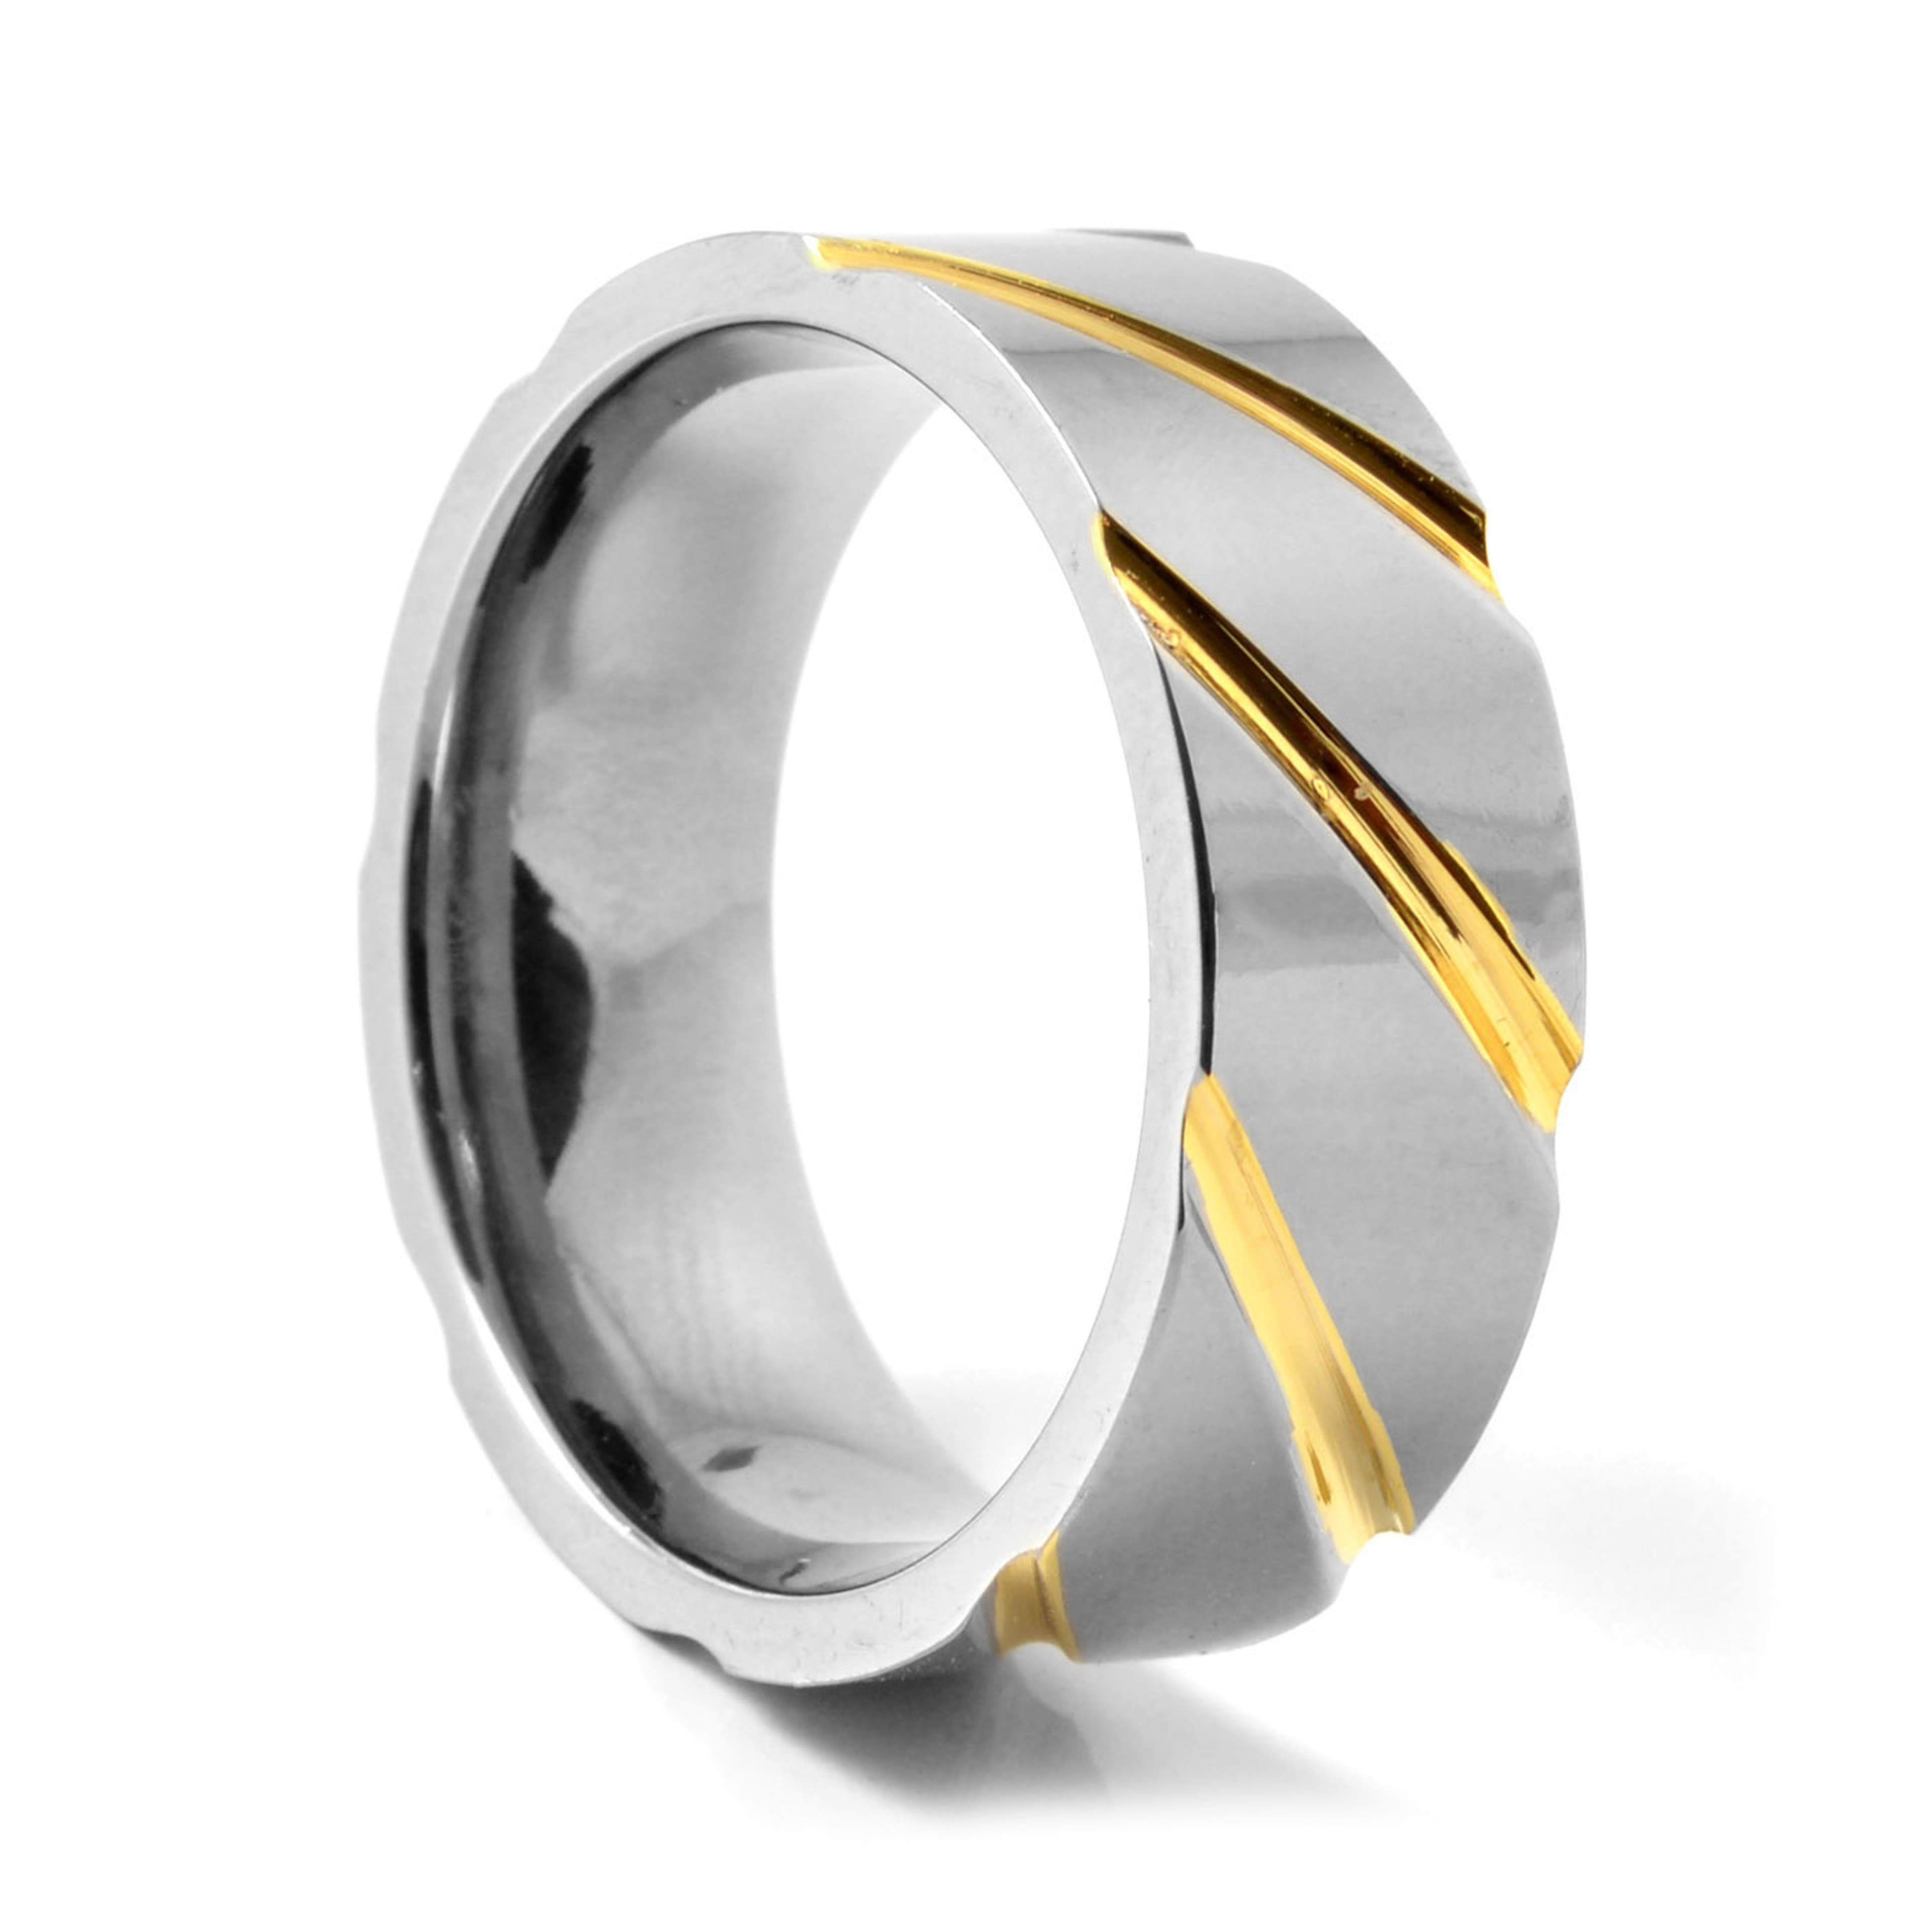 Unique Silver-Tone & Gold-Tone Titanium Ring